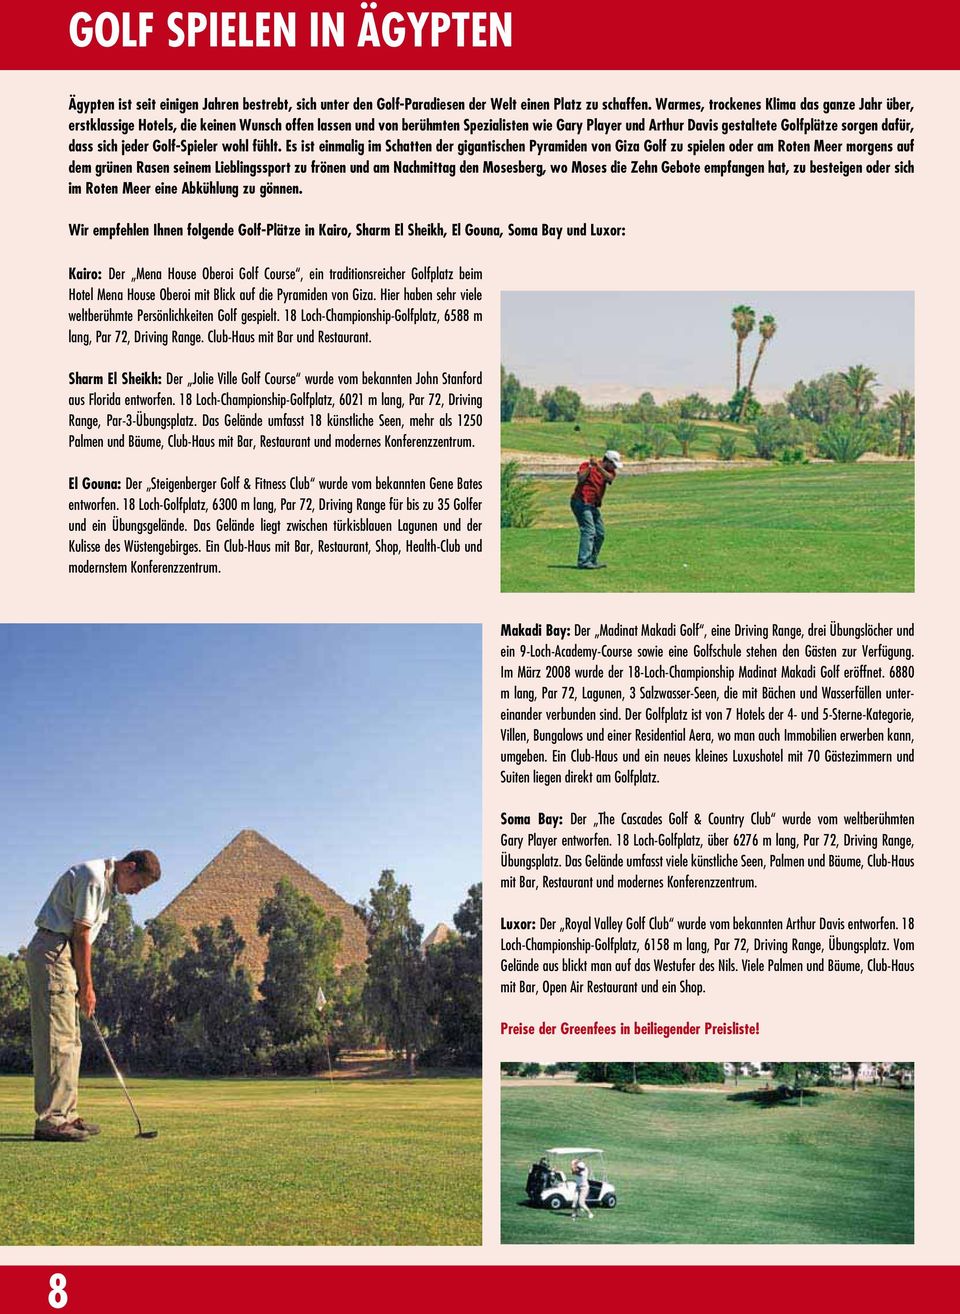 Sandstrand, Spezialisten 45 Minuten wie Gary vom Larnaca- Player und Arthur Davis gestaltete Golfplätze sorgen dafür, dass Flughafen sich und jeder 5 km Golf-Spieler wohl fühlt.